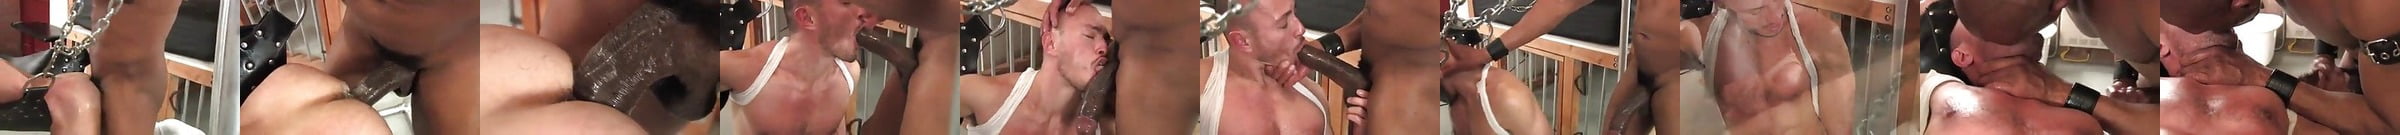 Vidéos Porno Raw And Rough Gay Durée En Vedette Xhamster